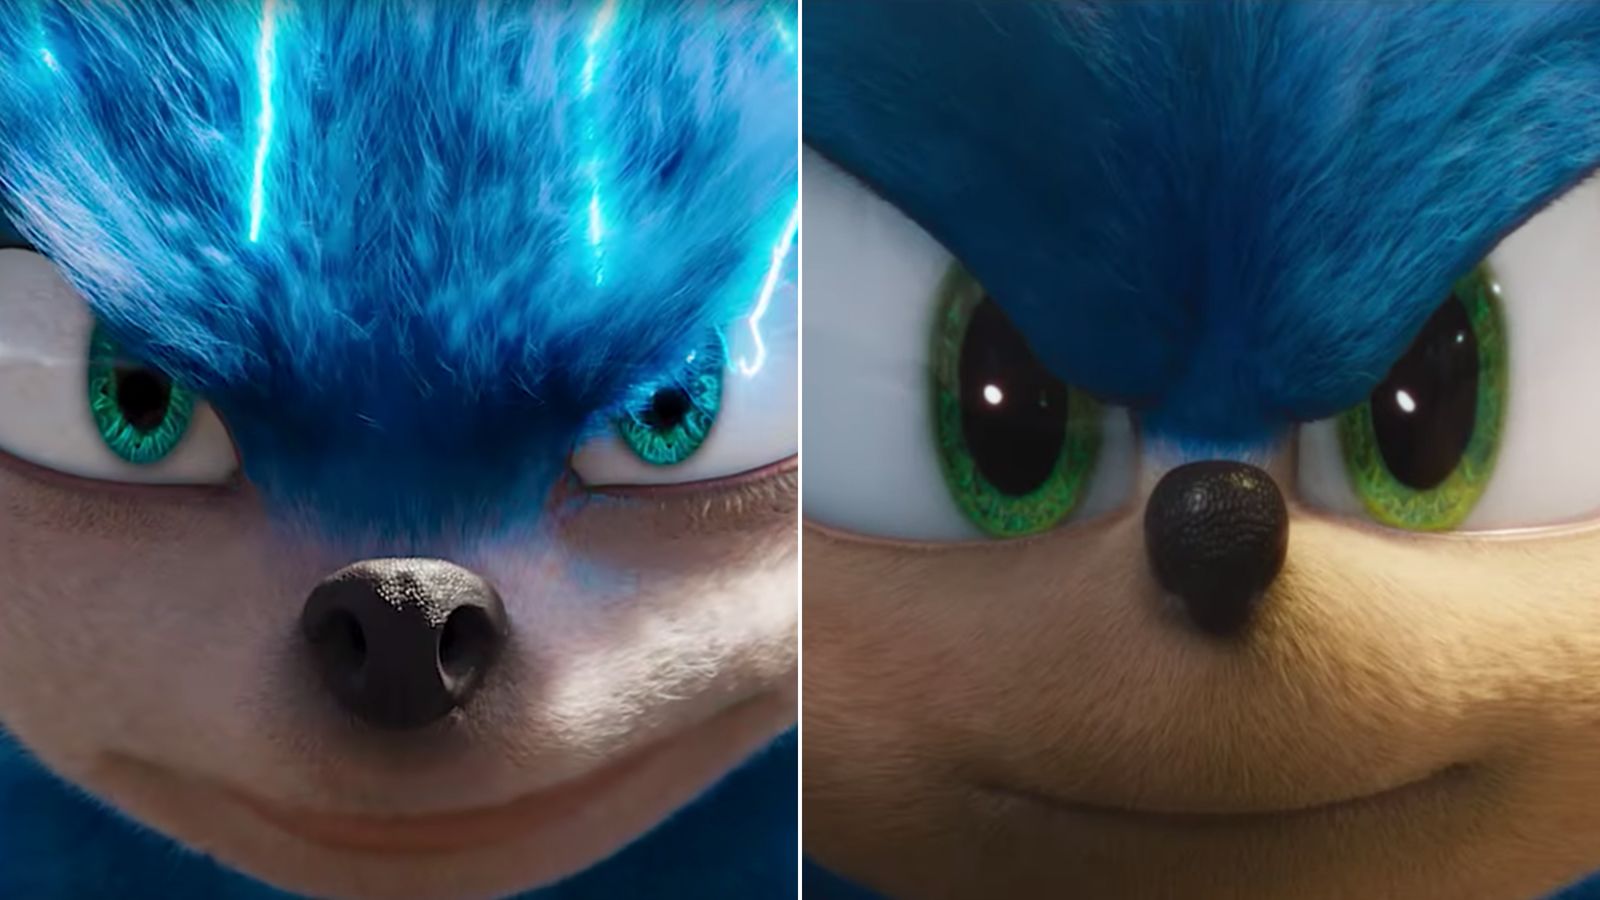 Sonic старая версия. Соник 2020 первая версия. Соник первая версия и 2 глаза Соника.